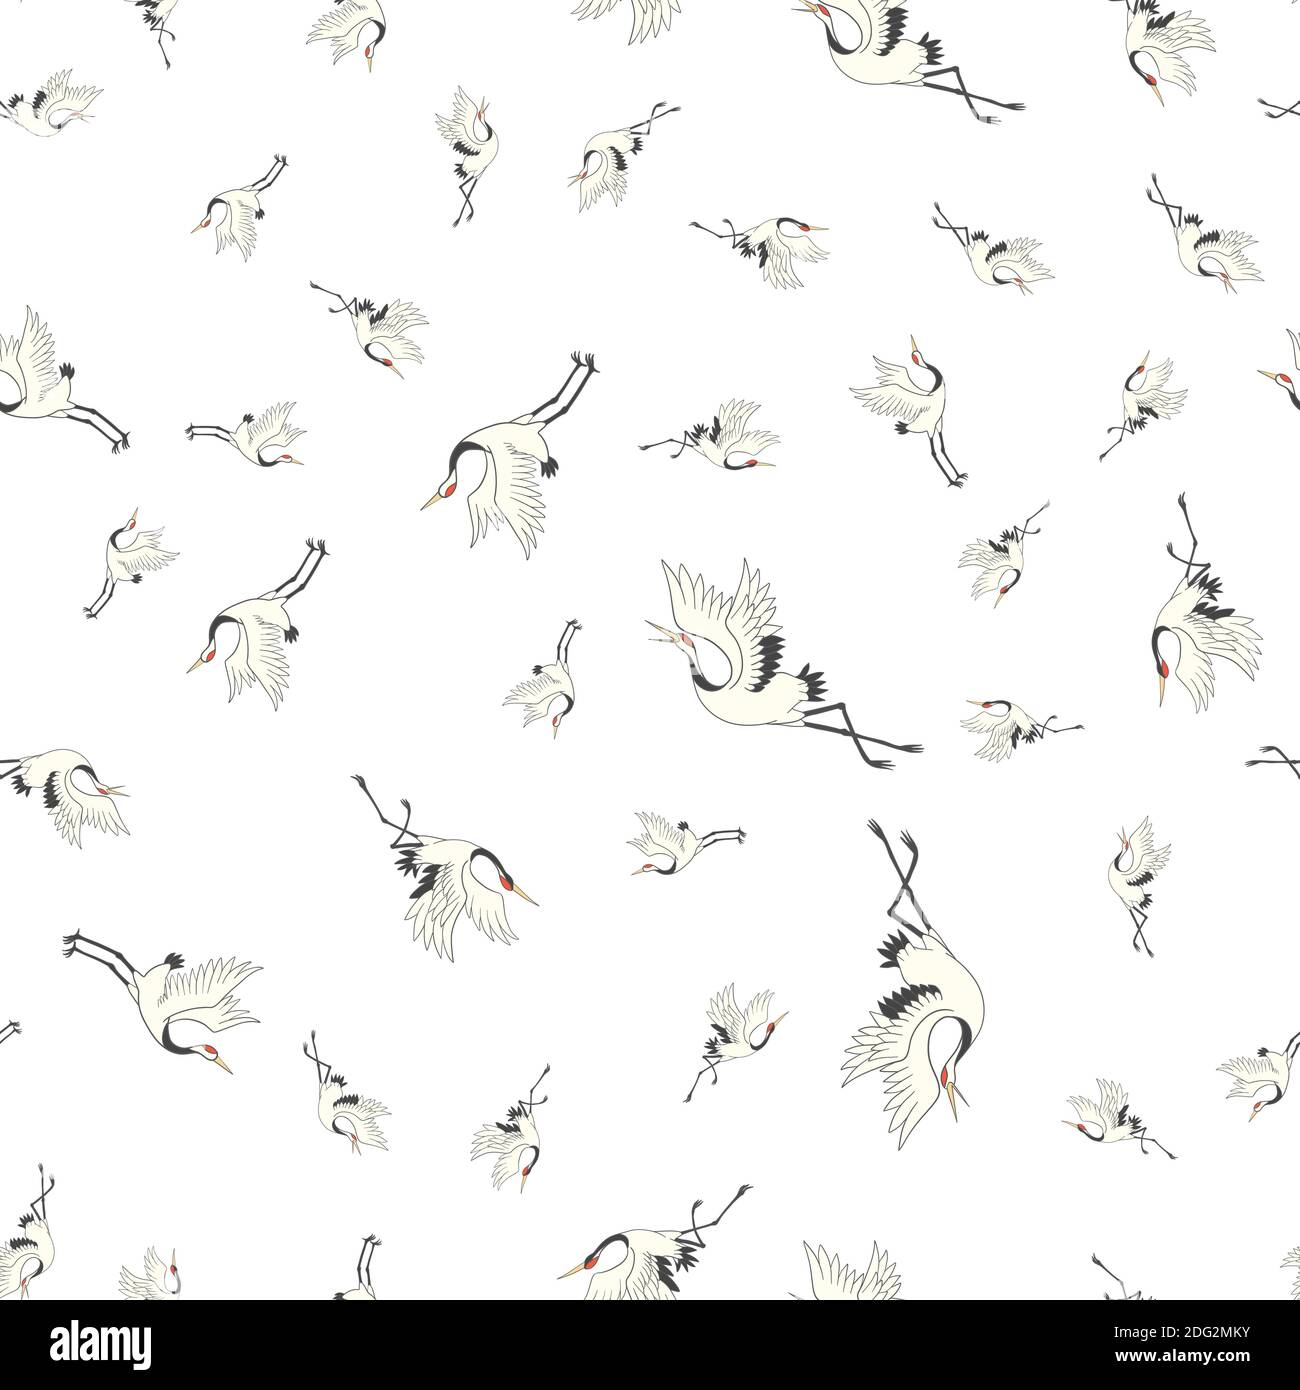 crane, pattern, birds, vector, illustration Stock Vector